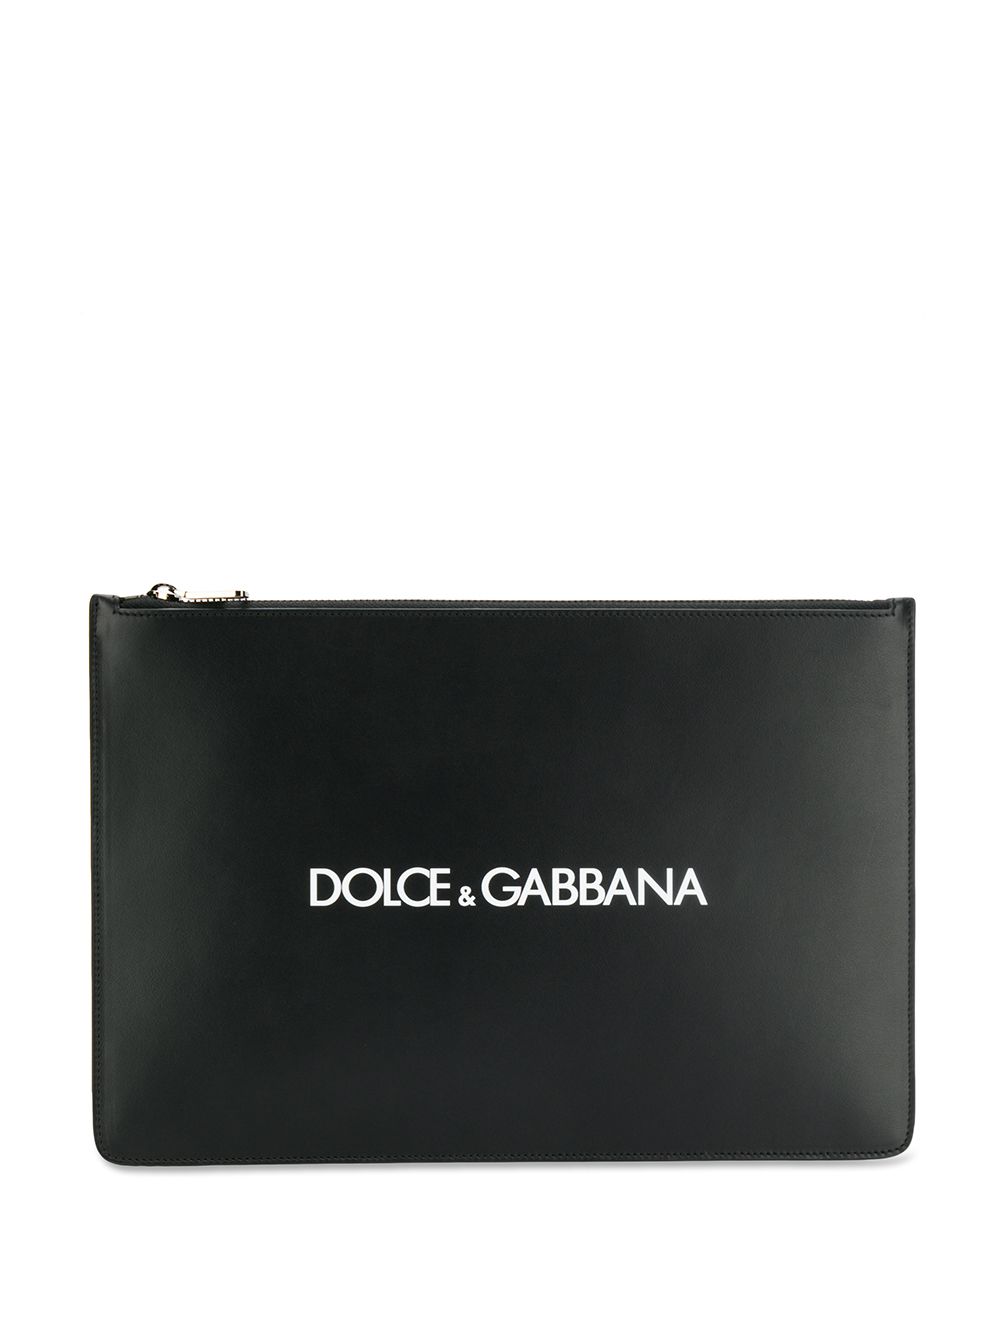 фото Dolce & gabbana клатч с логотипом